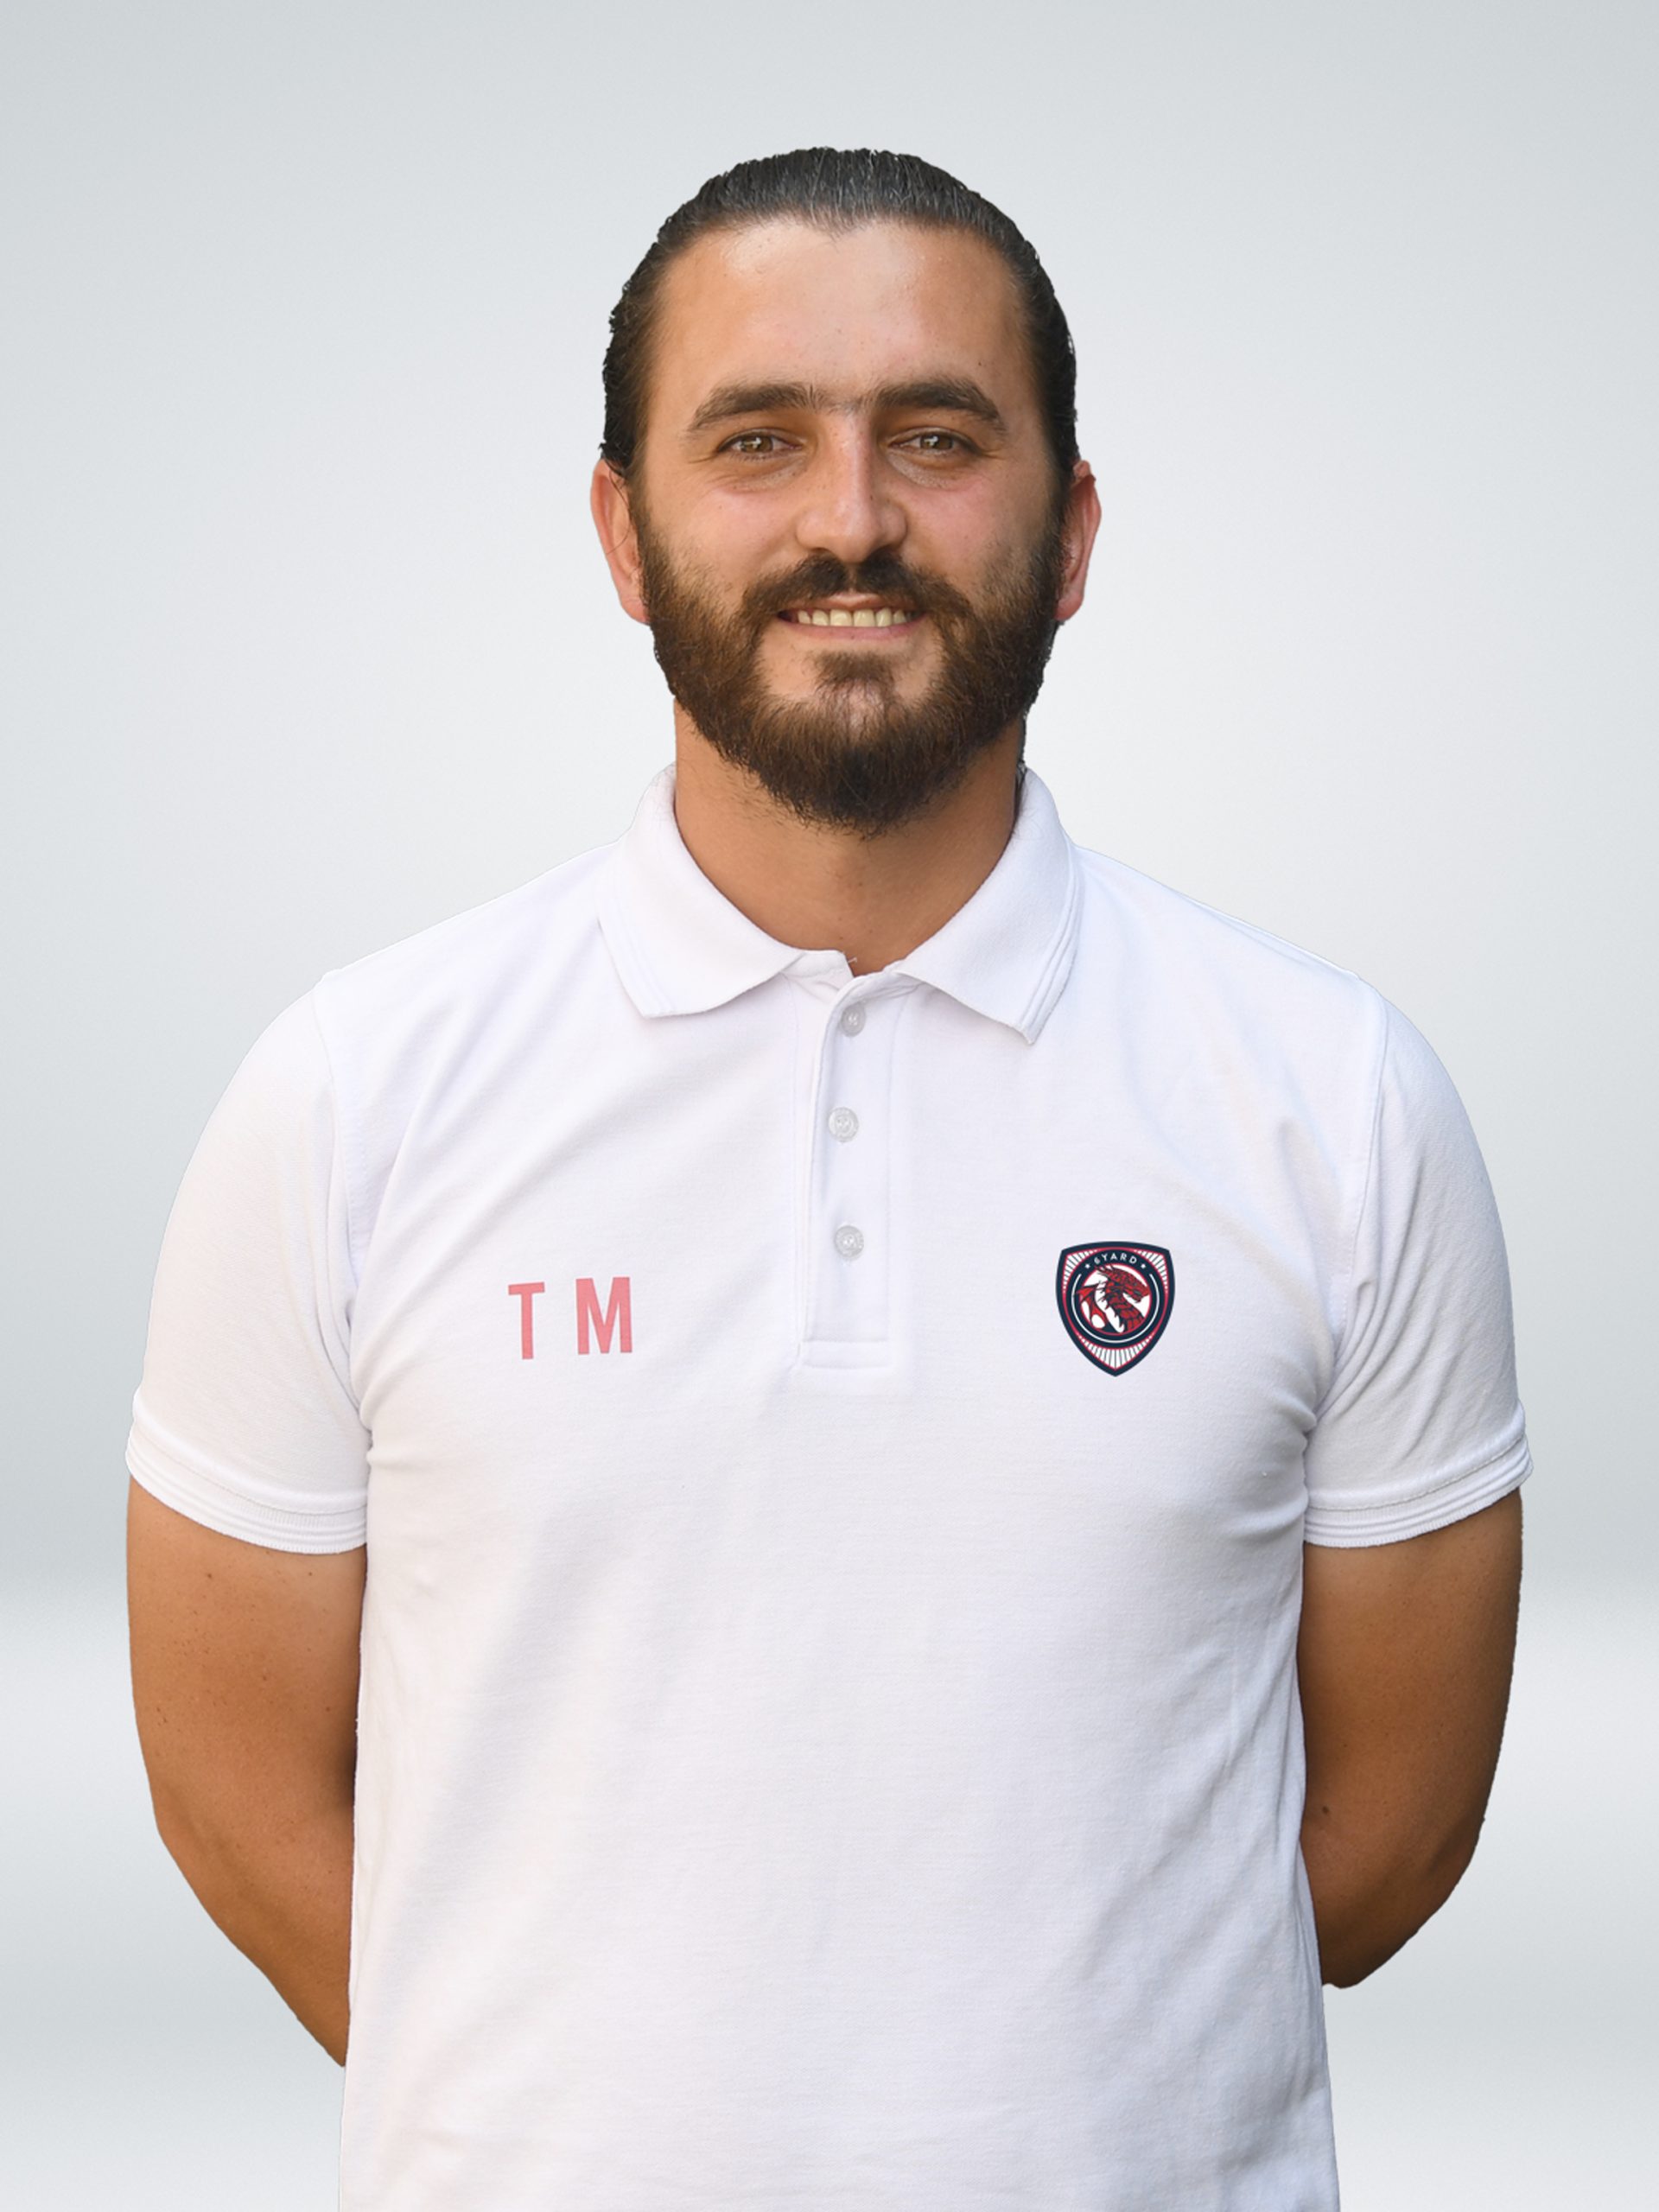 Tareq Saadeh - Football Coach